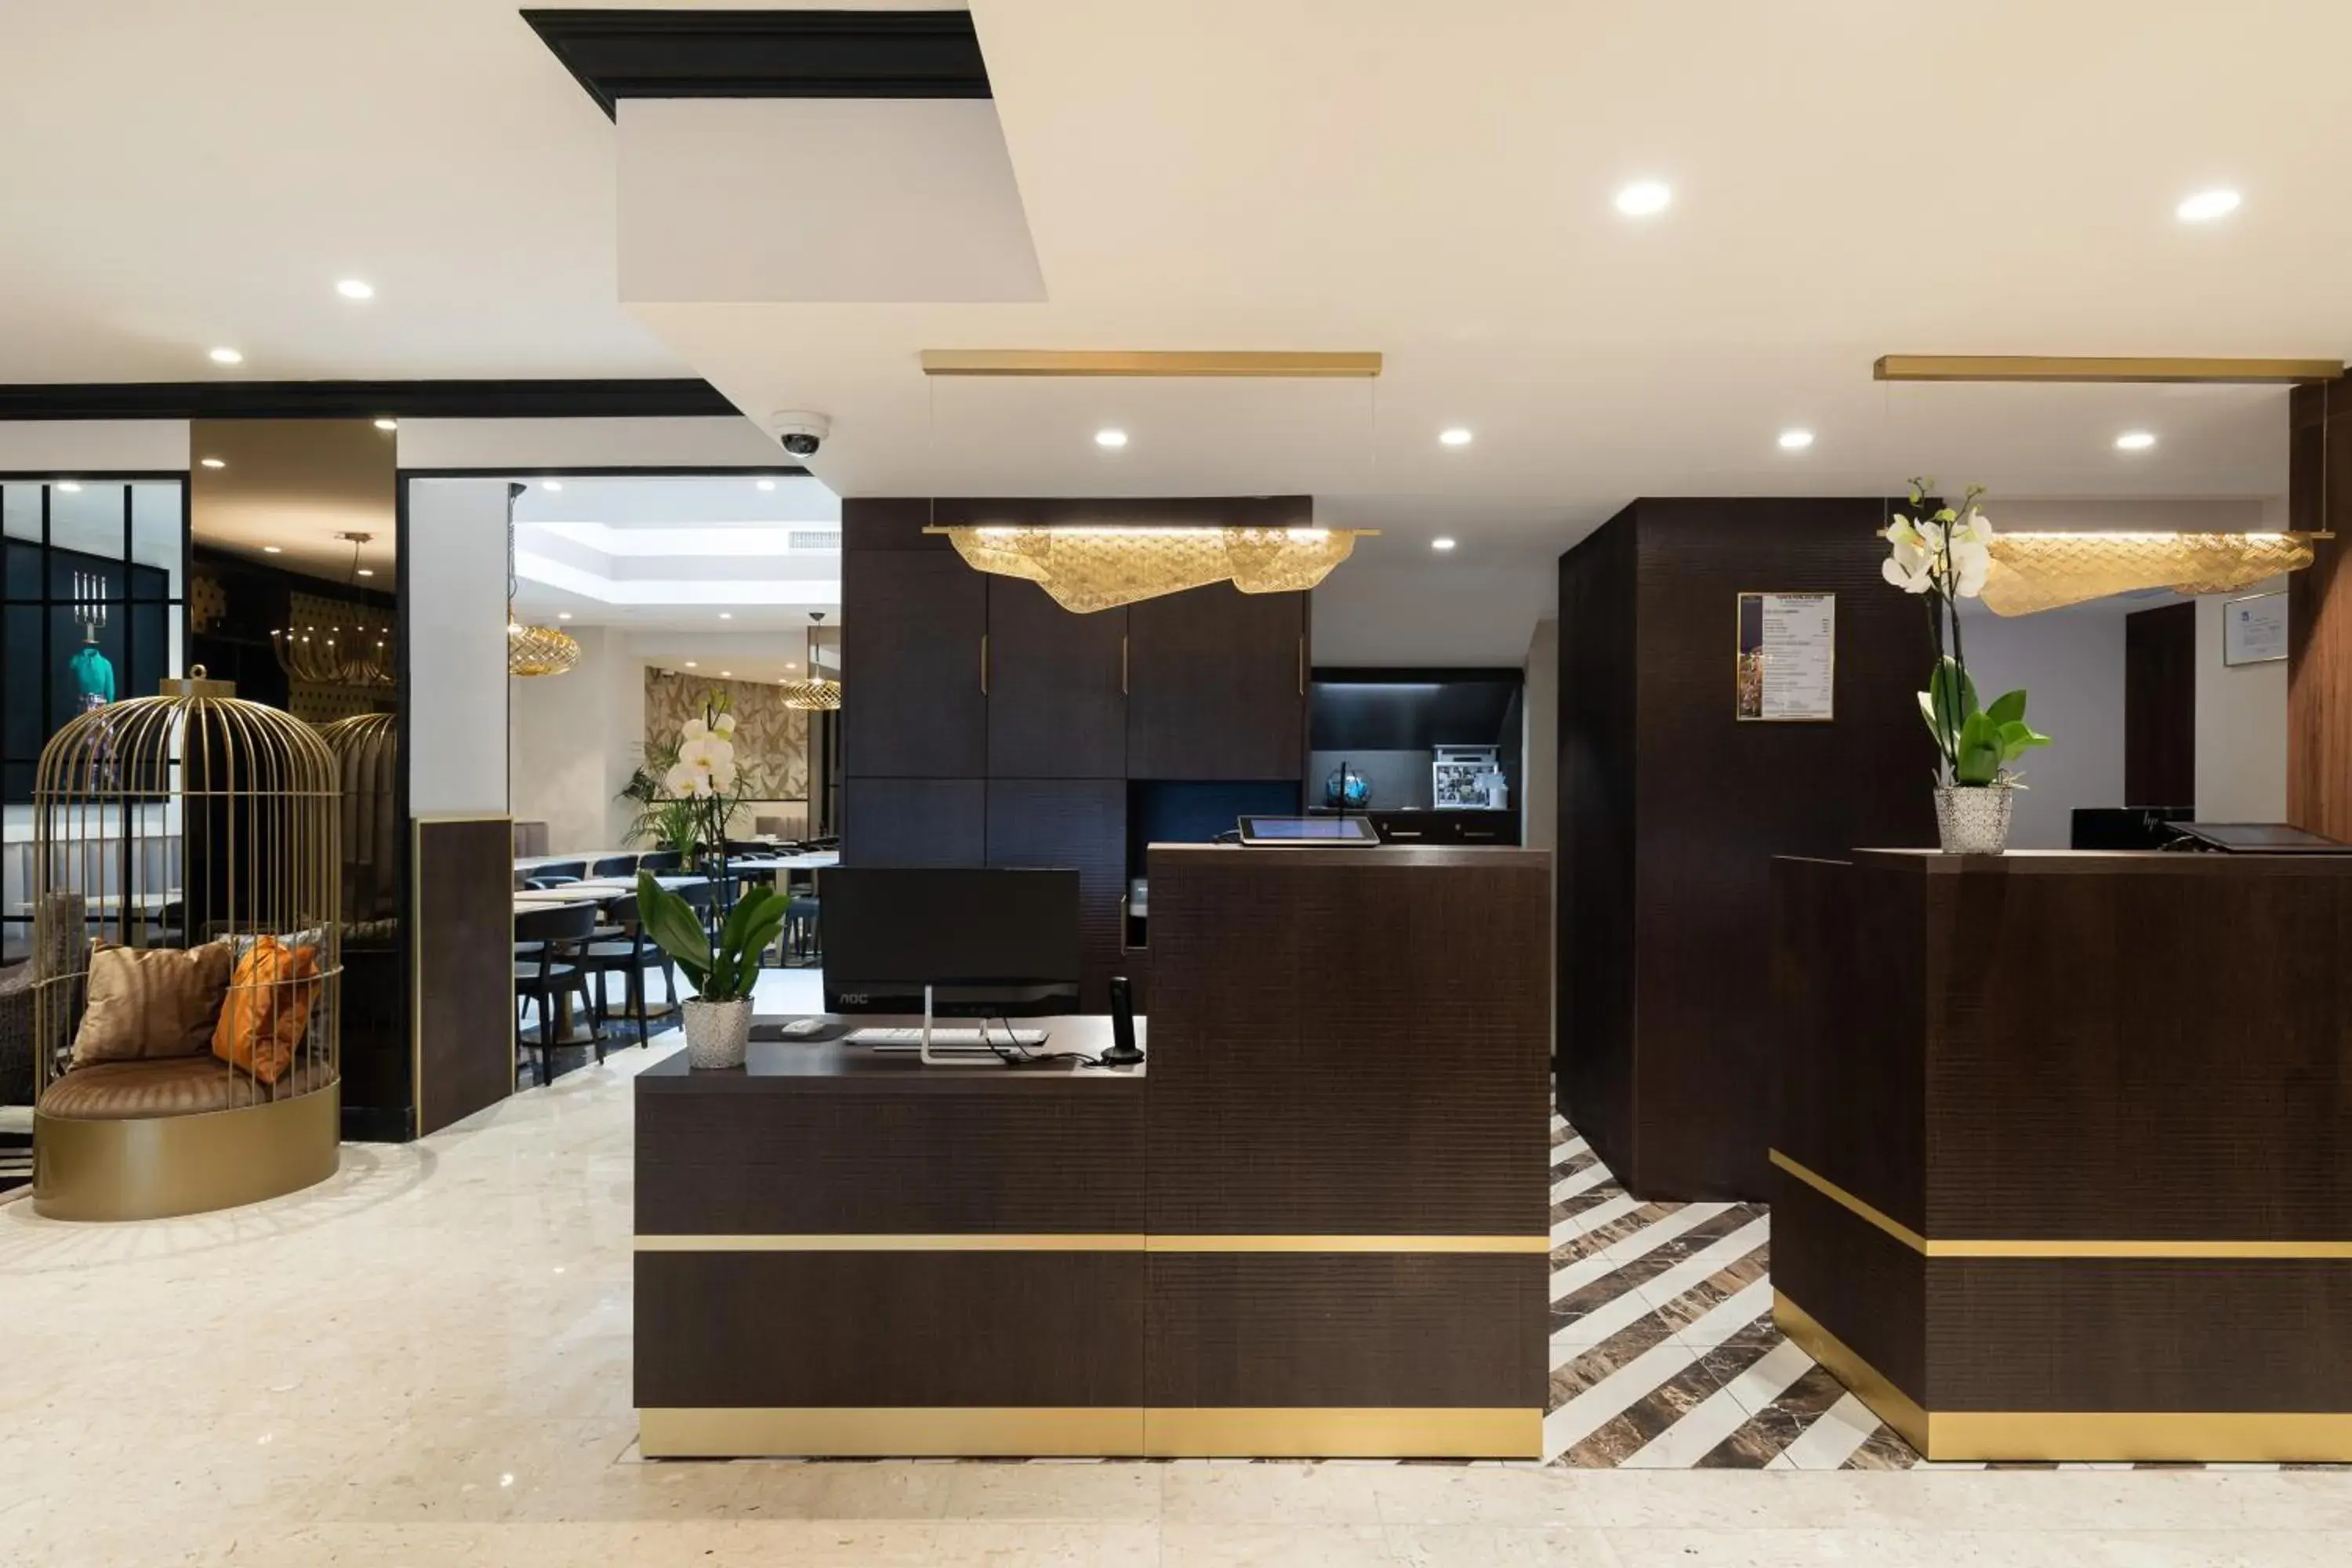 Lobby or reception, Lobby/Reception in Best Western Plus Hôtel Massena Nice